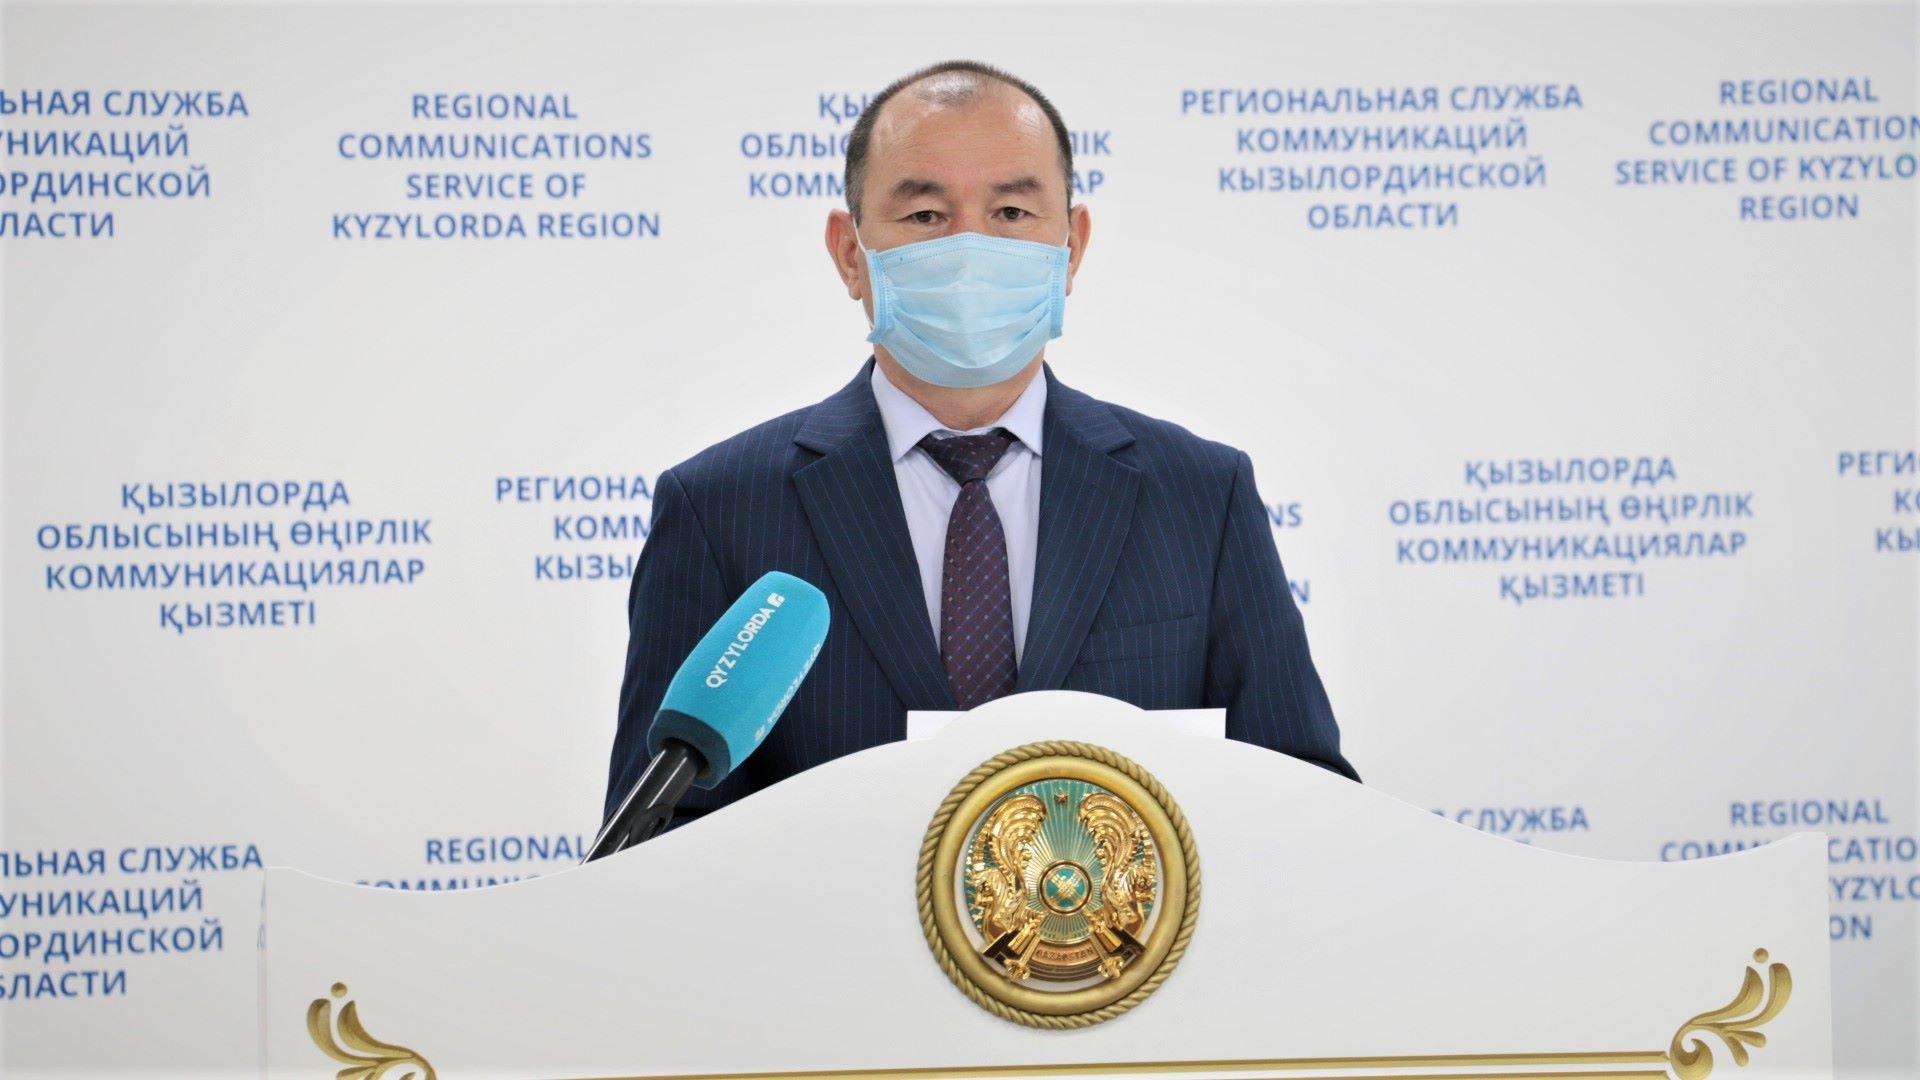 Қызылорда: Медицина саласының 6 қызметкері вирус жұқтырған